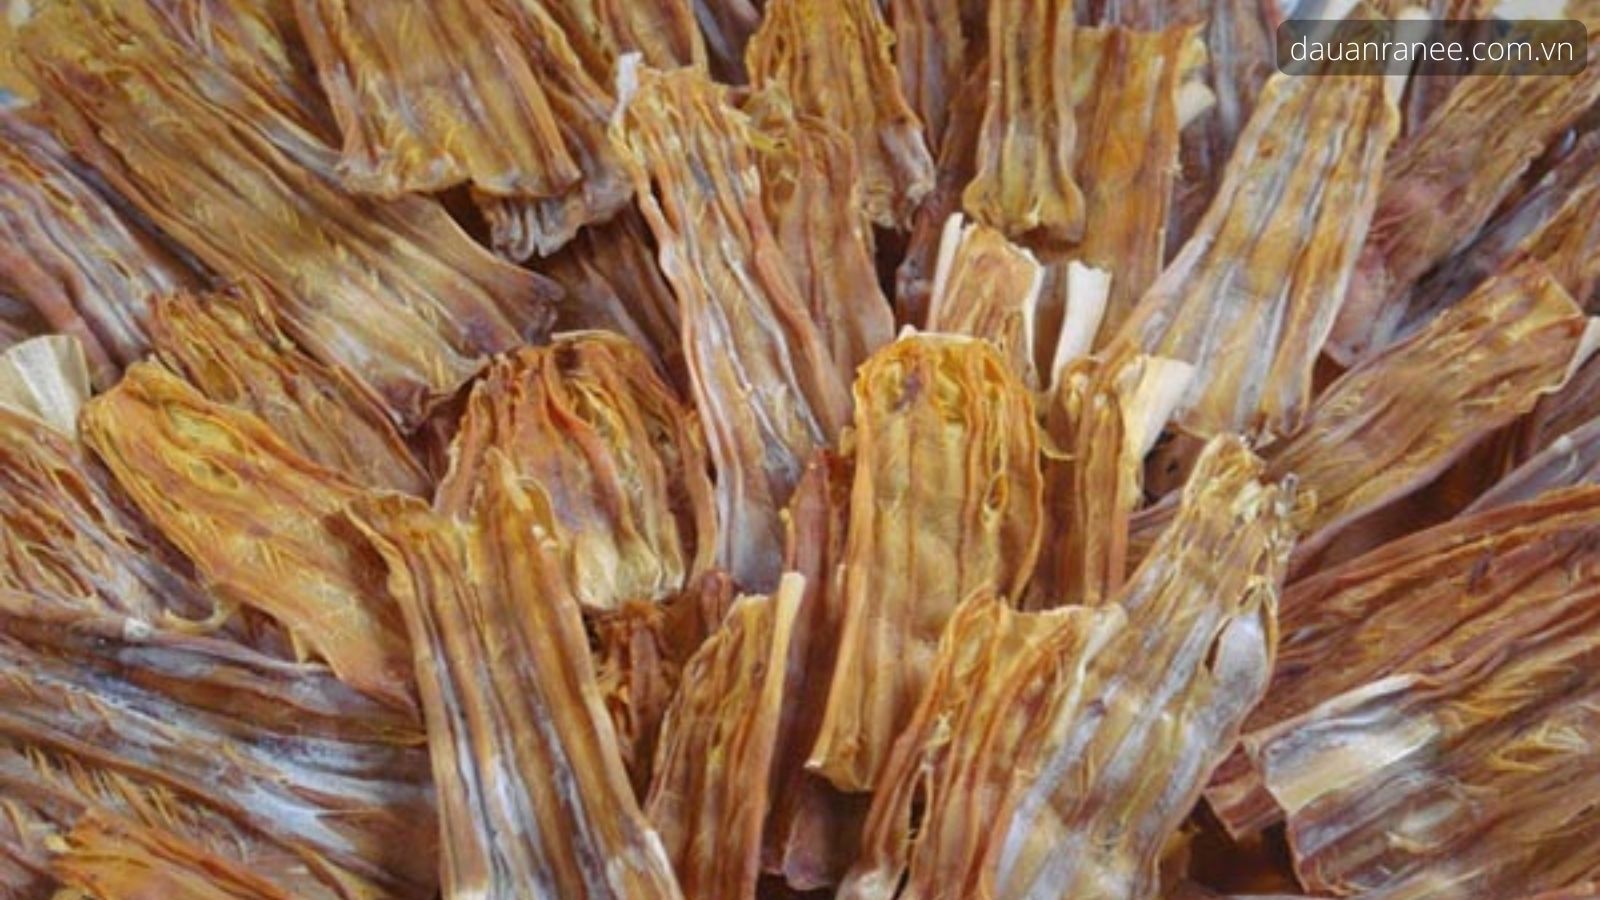 Măng Khô Tuyên Quang - Món ăn đặc sản Tuyên Quang